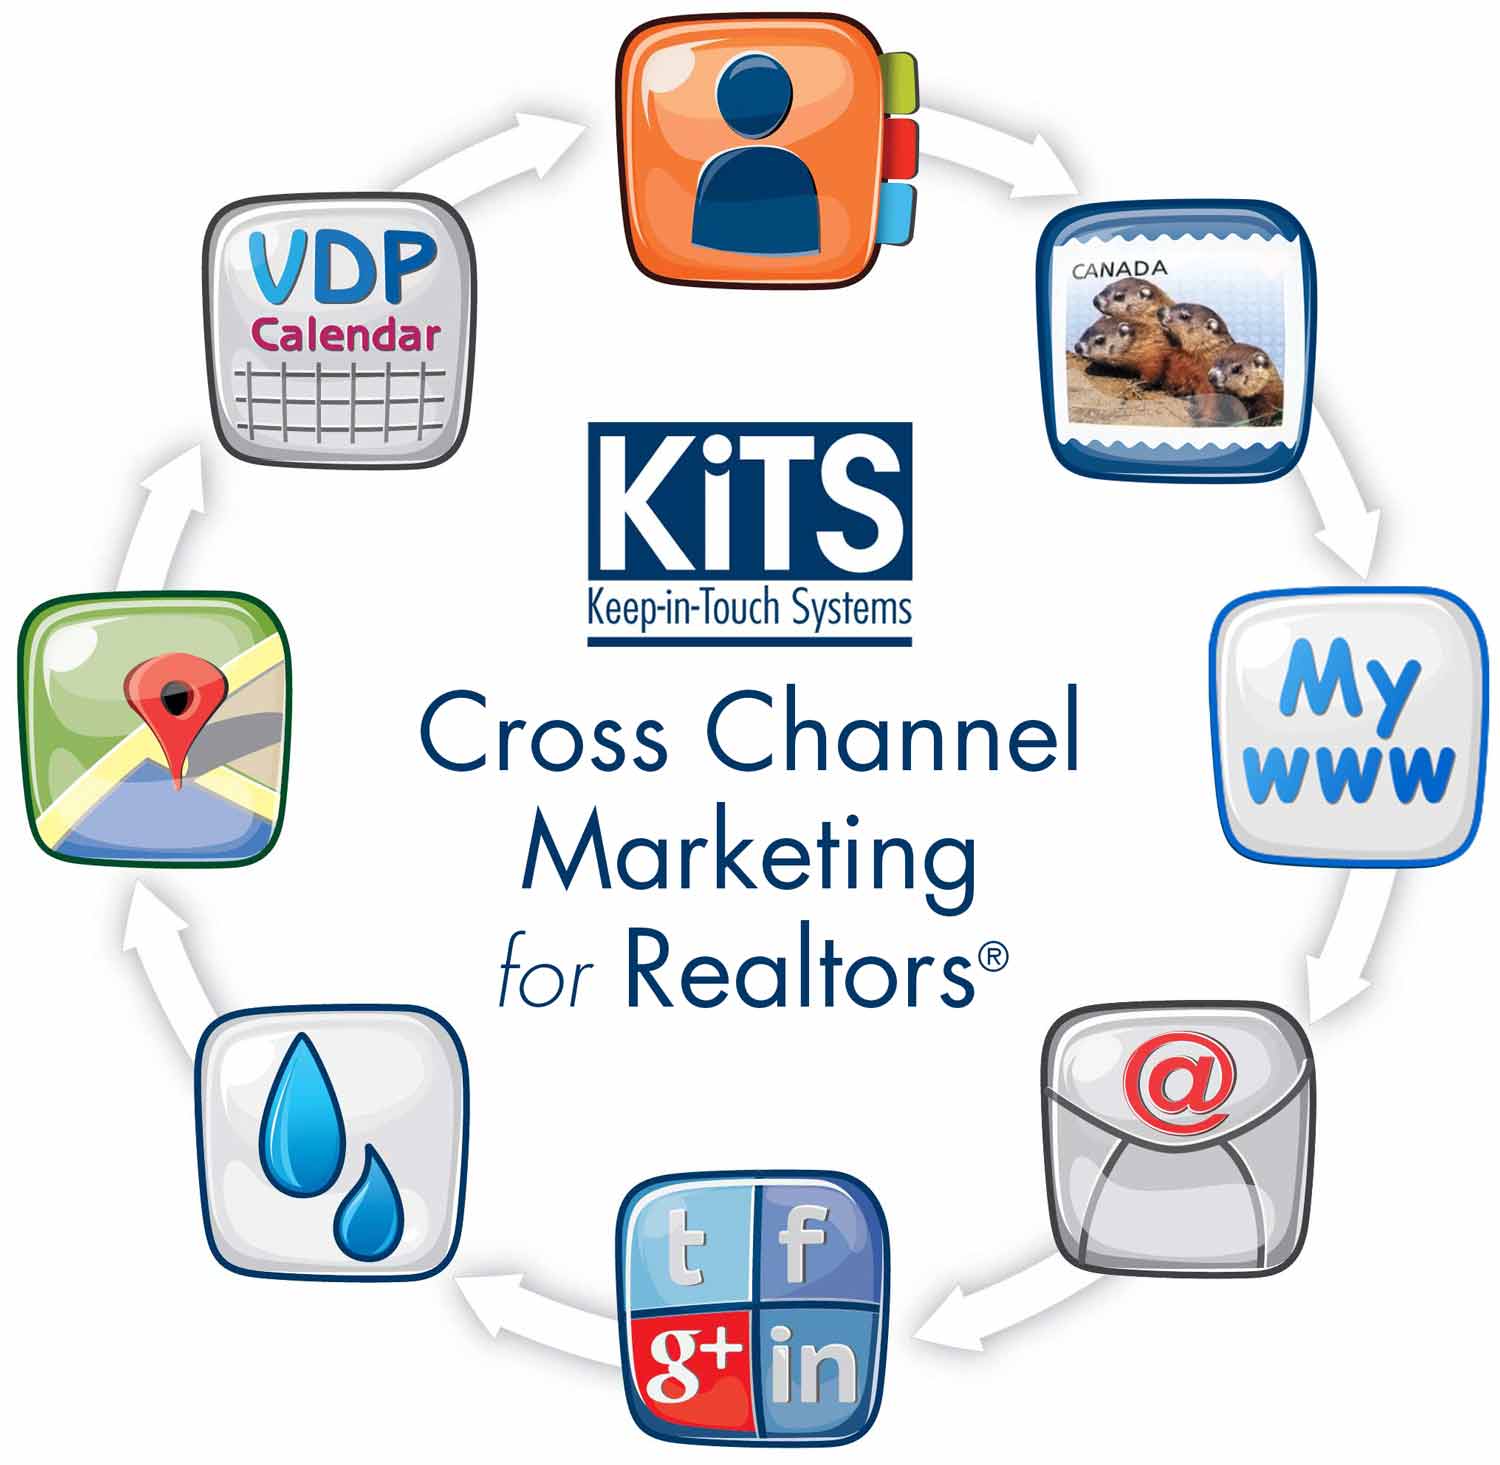 KiTS Cross Channel Marketing for Realtors